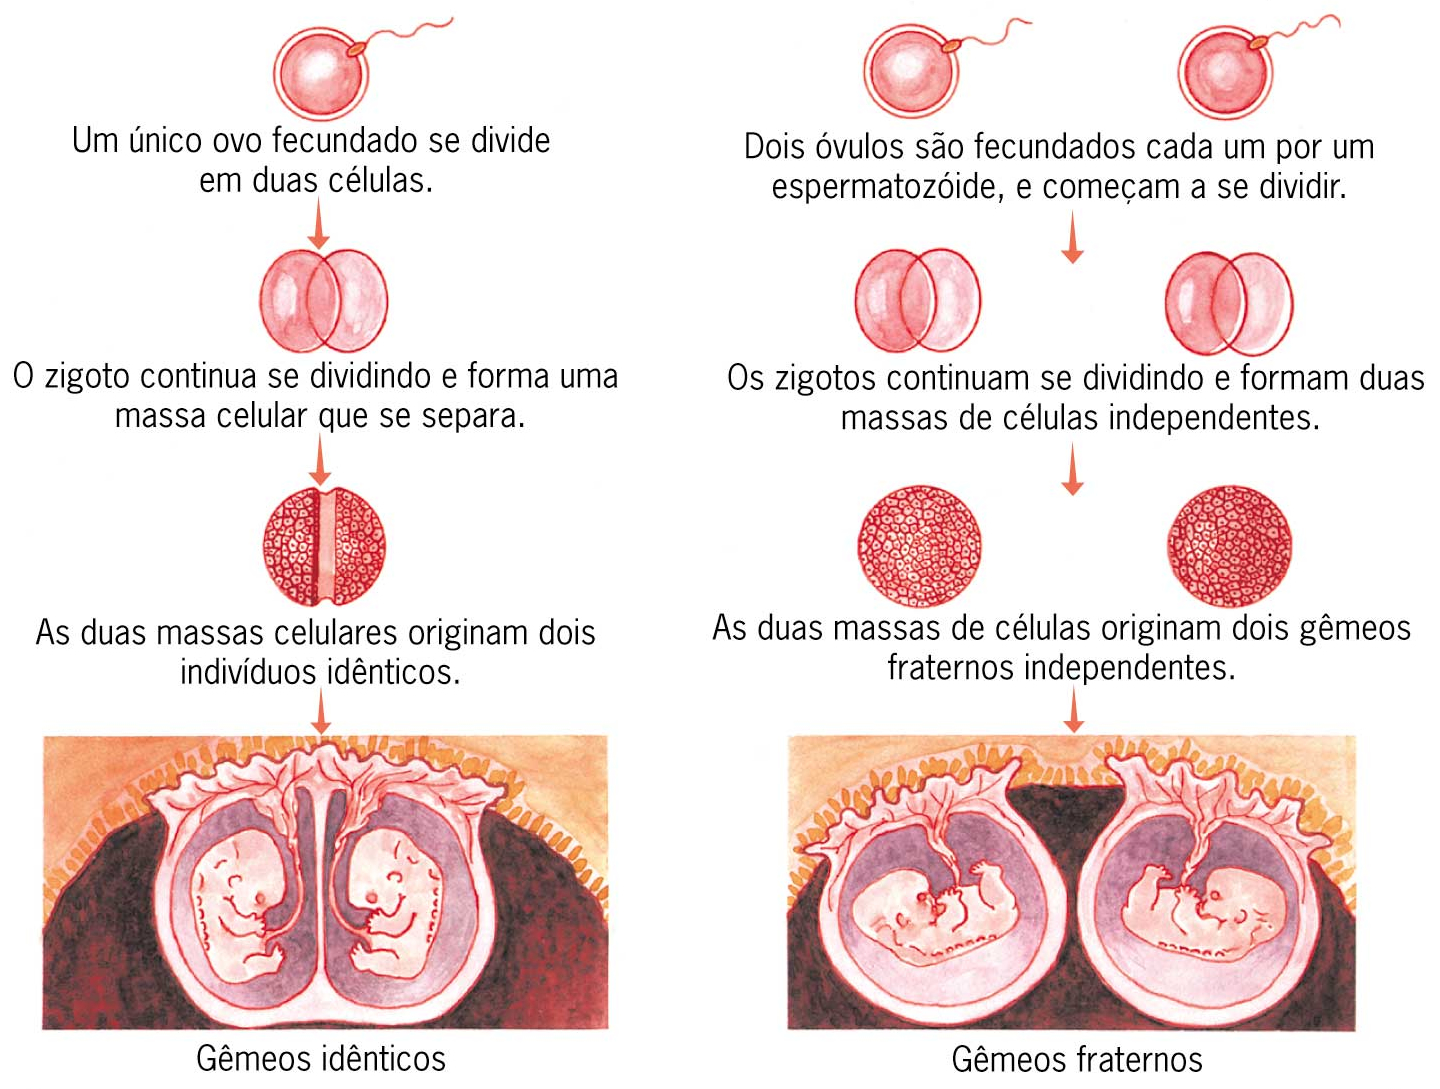 Implantar ovulos fecundados